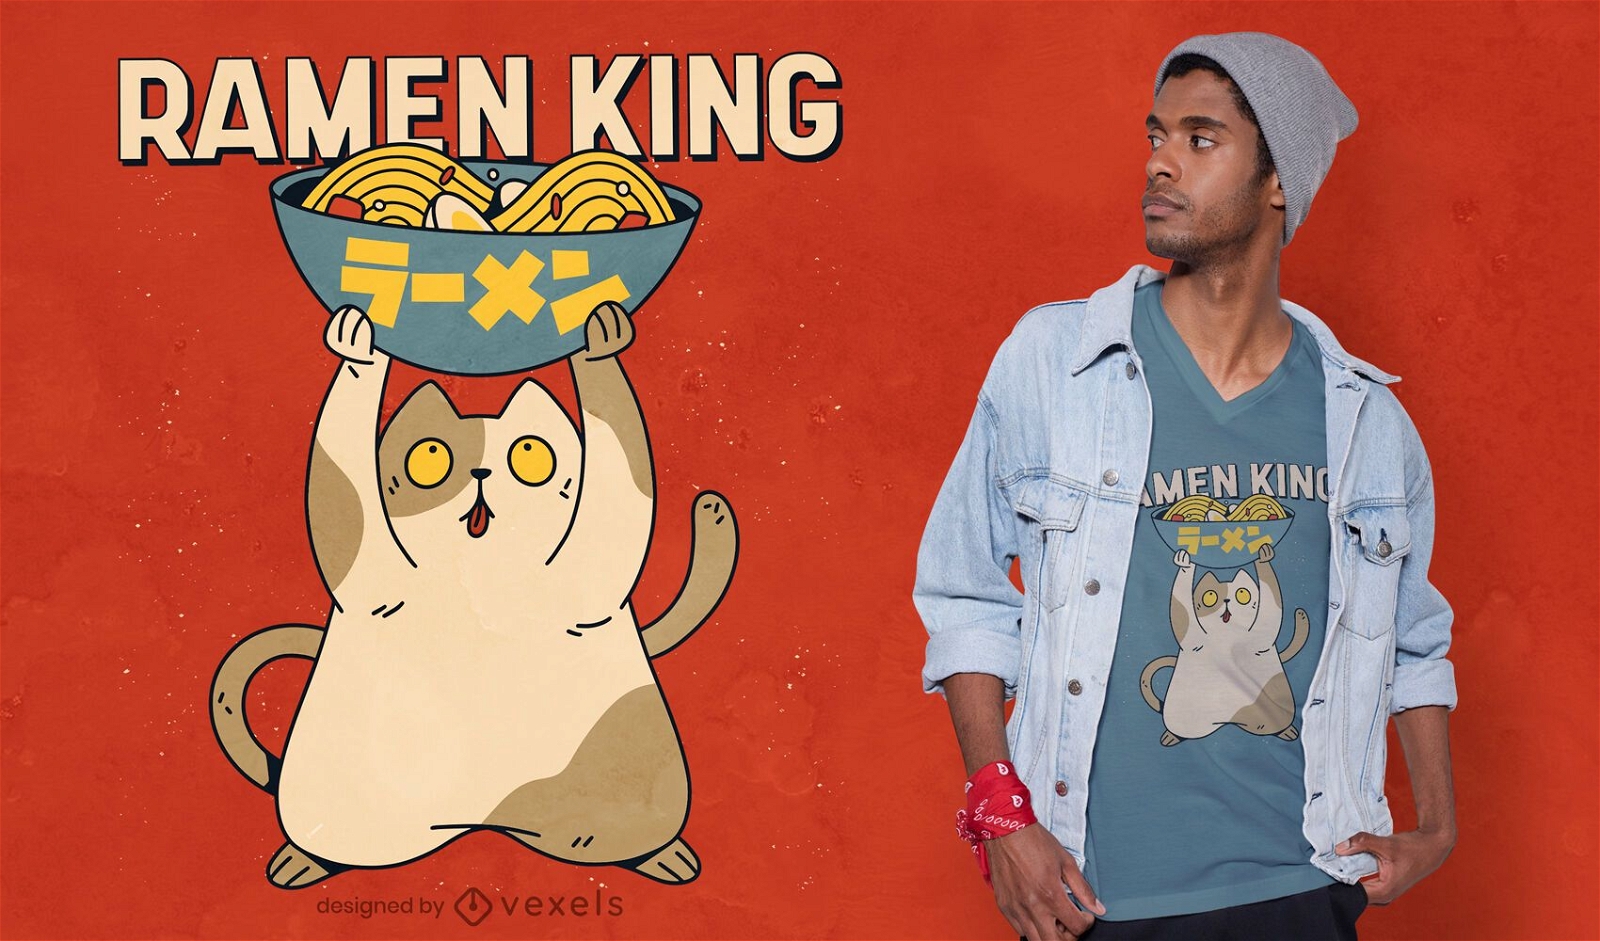 Ramen king t-shirt design